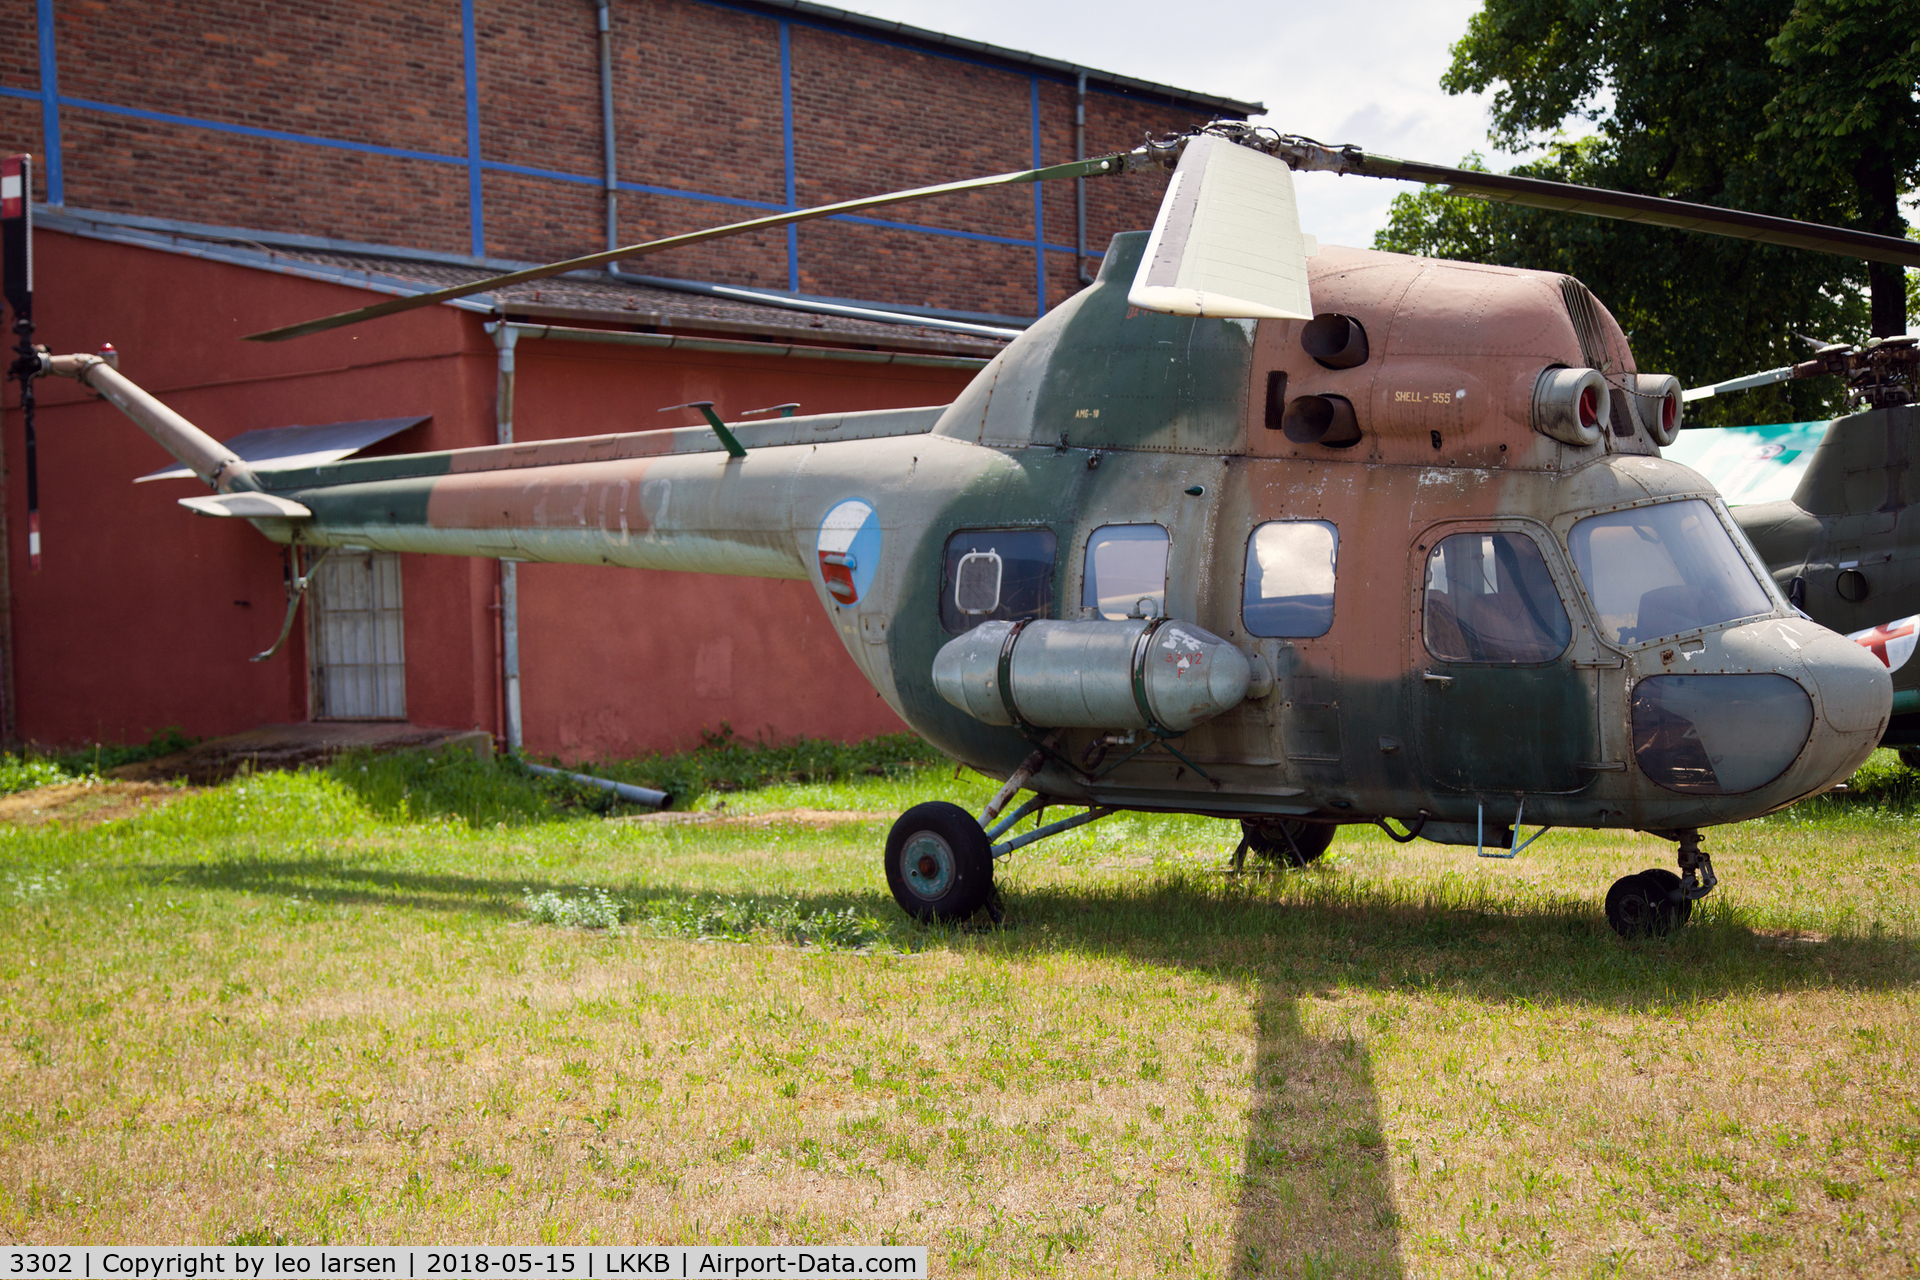 3302, 1973 Mil Mi-2 Hoplite C/N 533302123, kbely Air Museum 15.5.2018